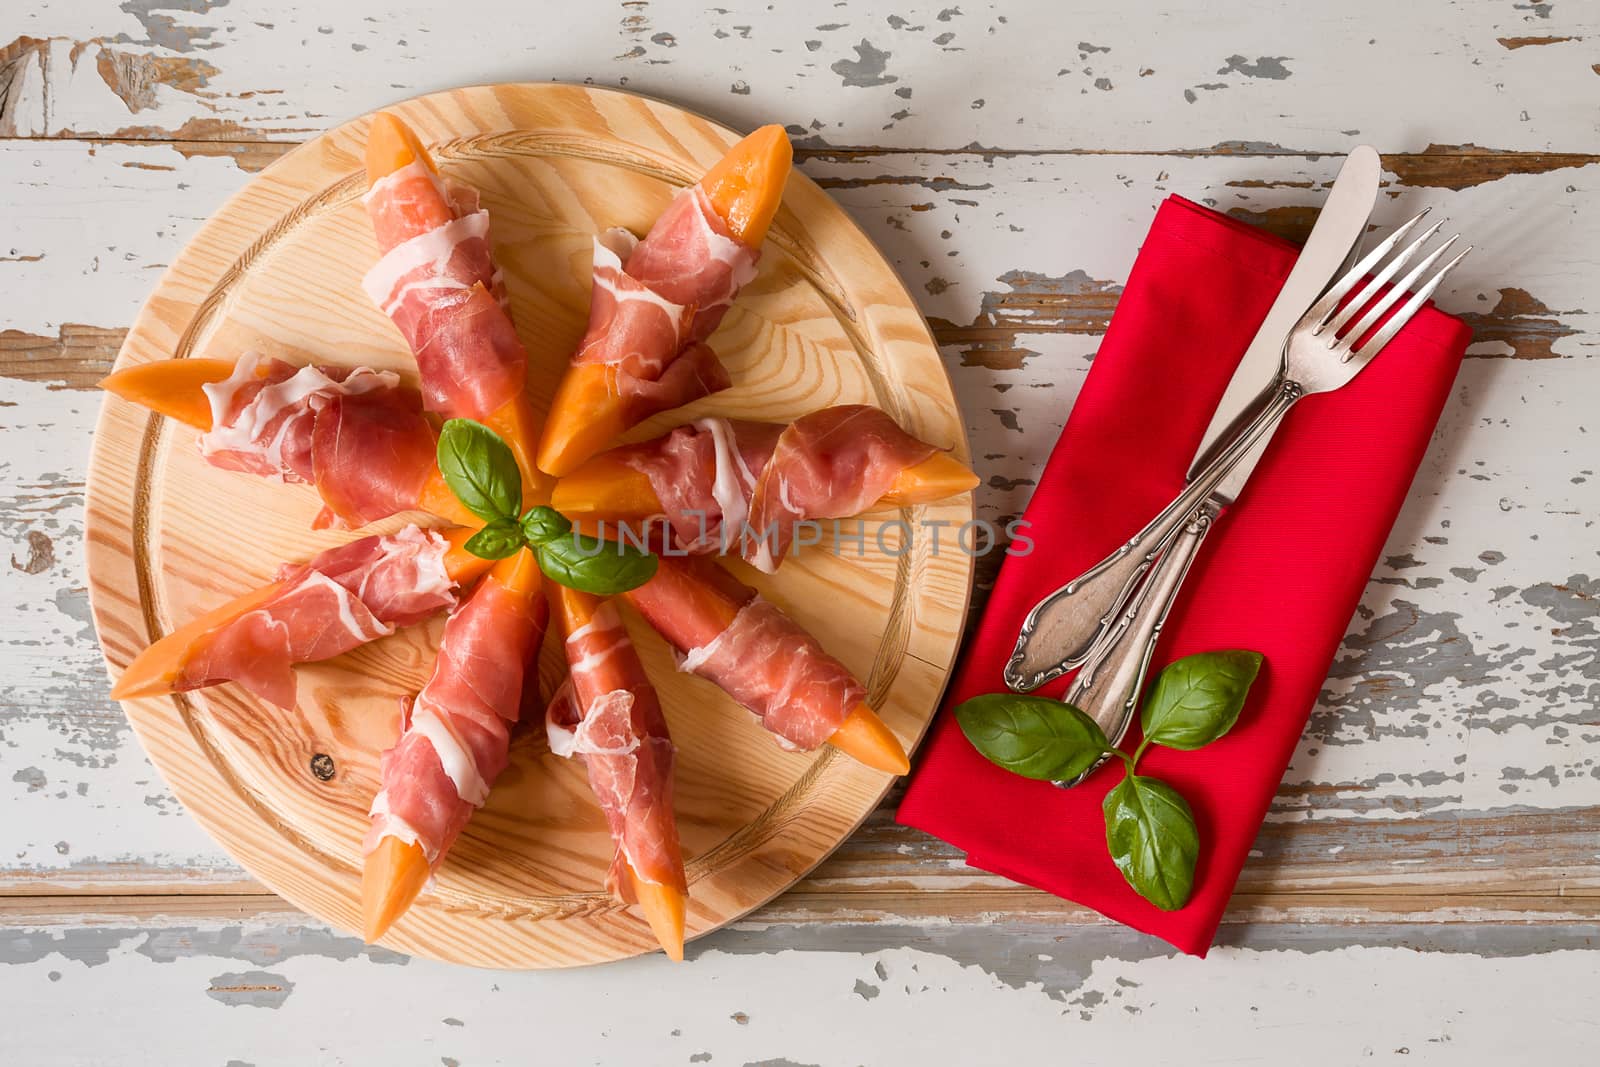 Italian appetizer with prosciutto and melon by LuigiMorbidelli